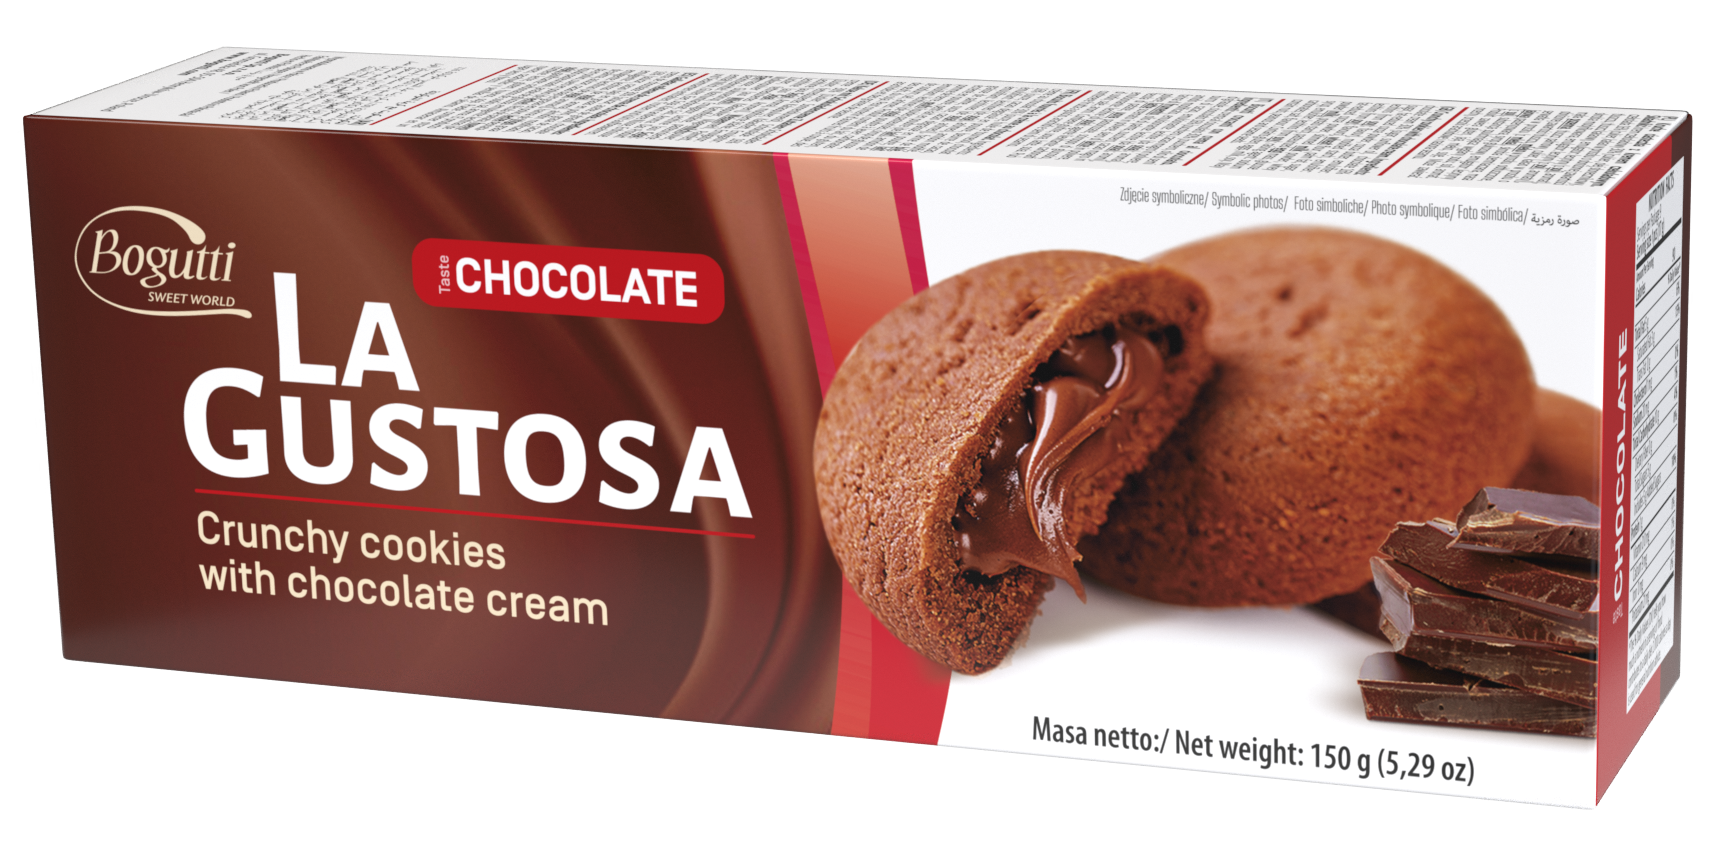 La Gustosa – Kruche ciastka z kremem czekoladowym